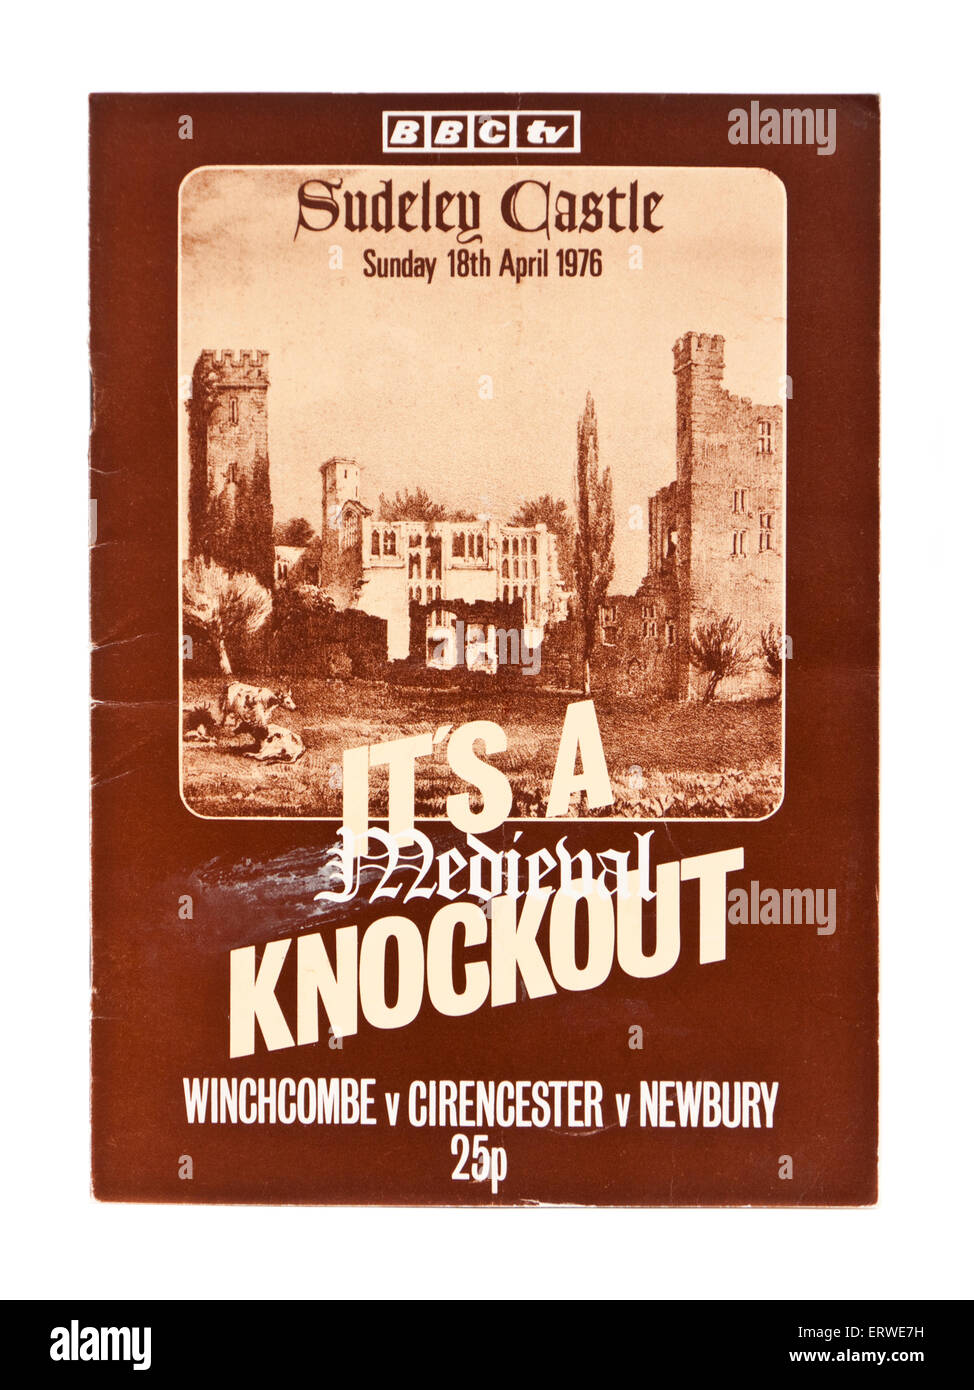 BBC TV programma per 'è un medievale knockout' presso il Castello di Sudeley domenica 18 aprile 1976 Foto Stock